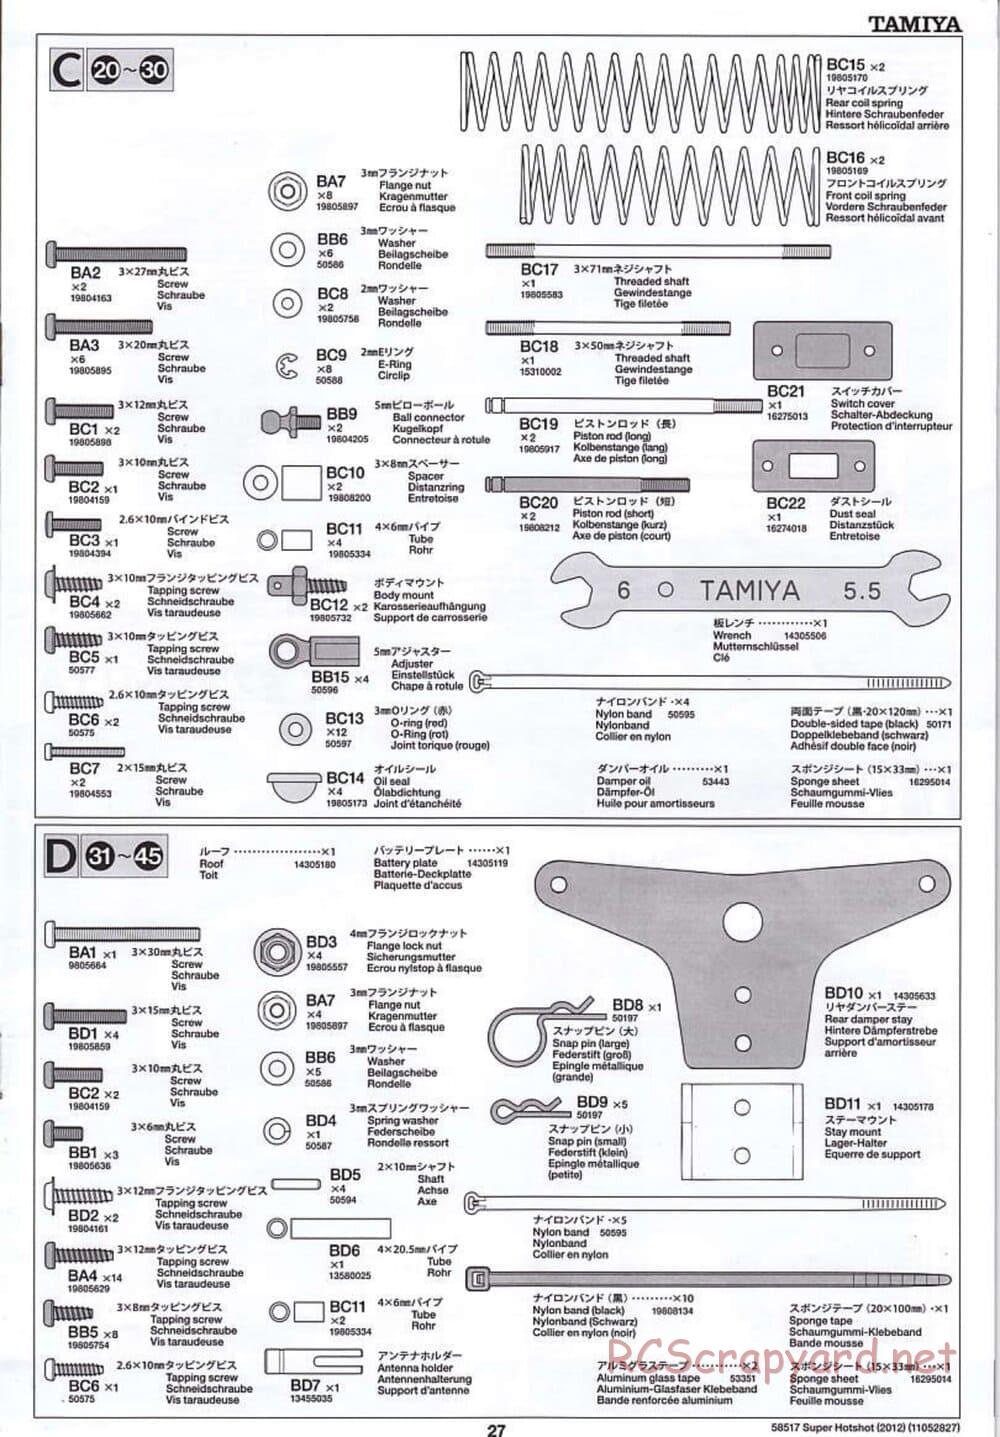 Tamiya - Super Hotshot 2012 - HS Chassis - Manual - Page 27